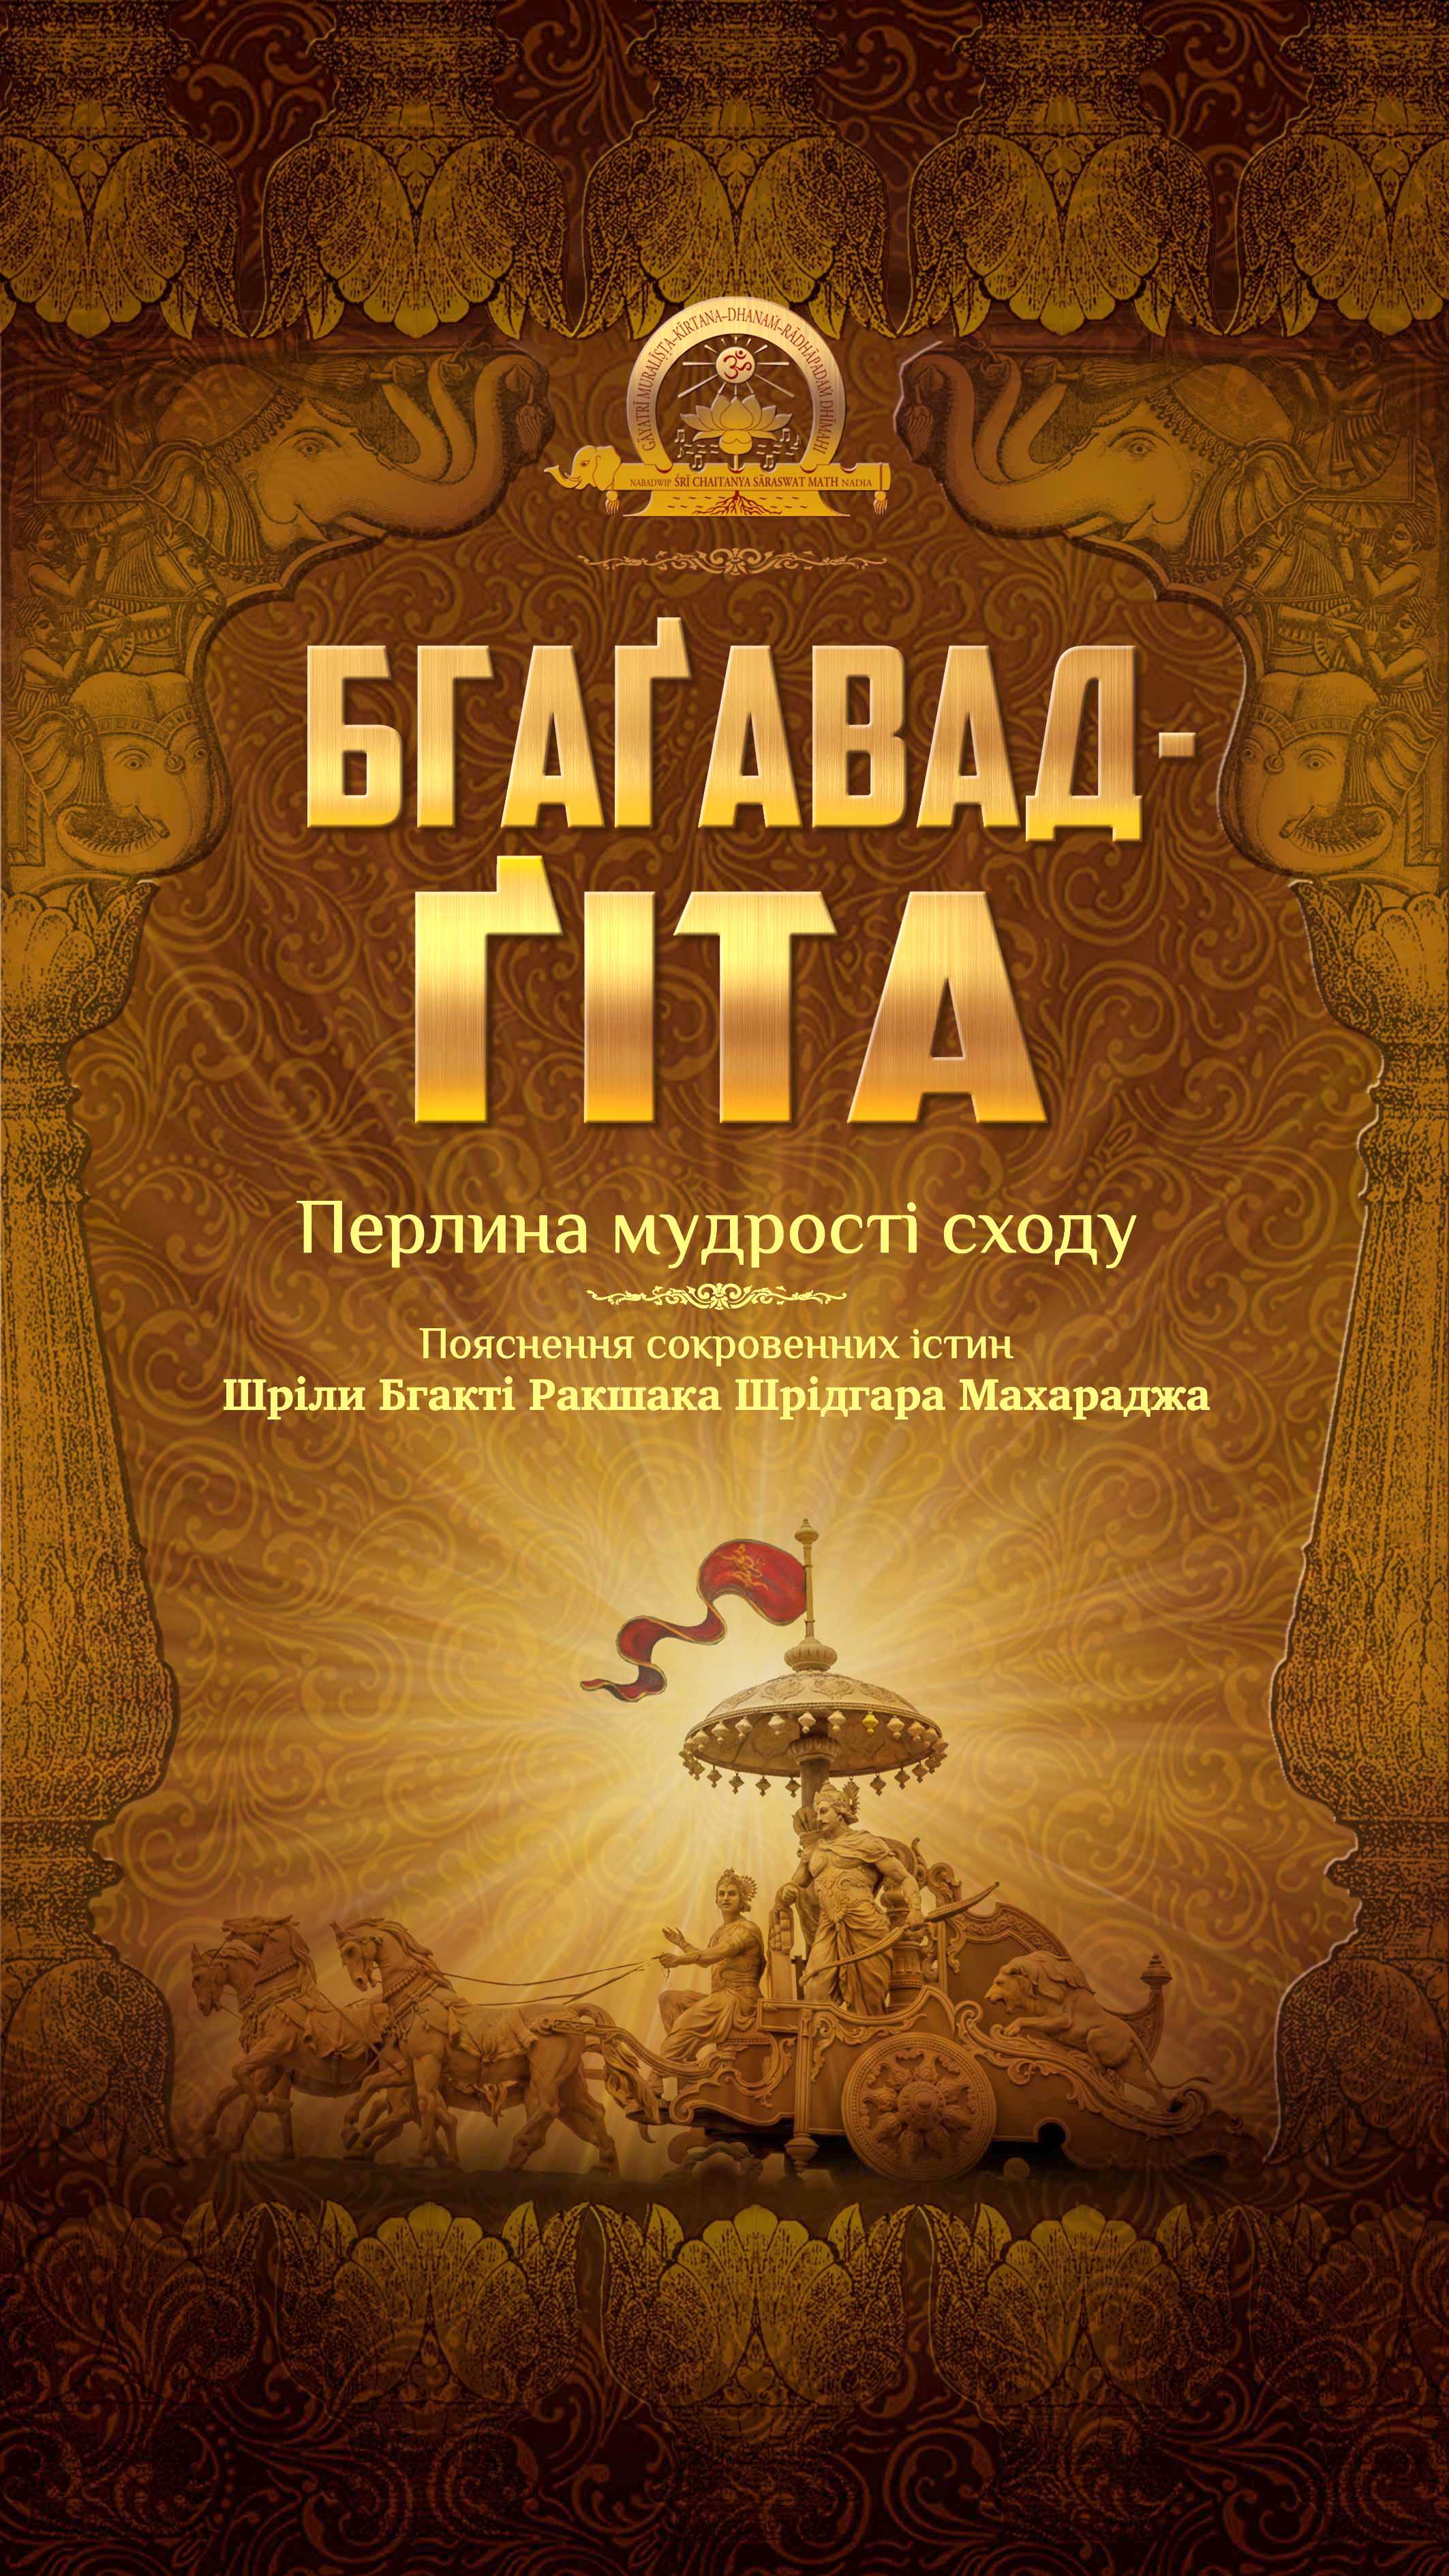 Бгаґавад-ґіта в українському перекладі